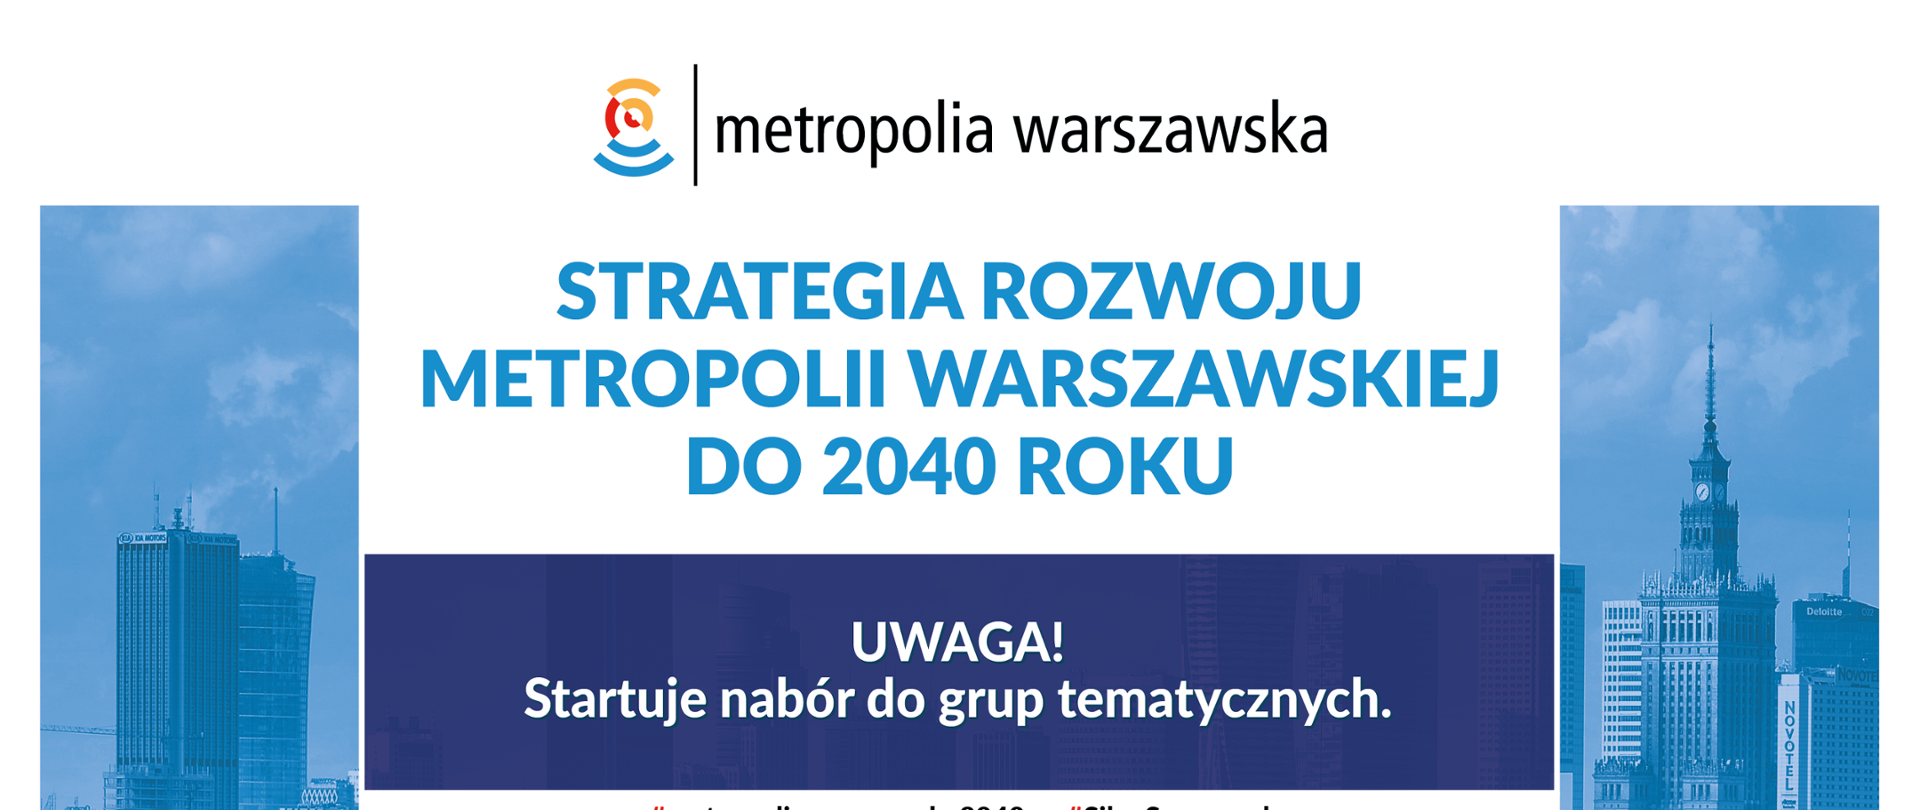 Startuje nabór na ekspertów tematycznych oraz przedstawicieli organizacji pozarządowych, którzy zaangażują się w przygotowanie „Strategii rozwoju metropolii warszawskiej do 2040 roku”. Grafika w biało-granatowym kolorze. 